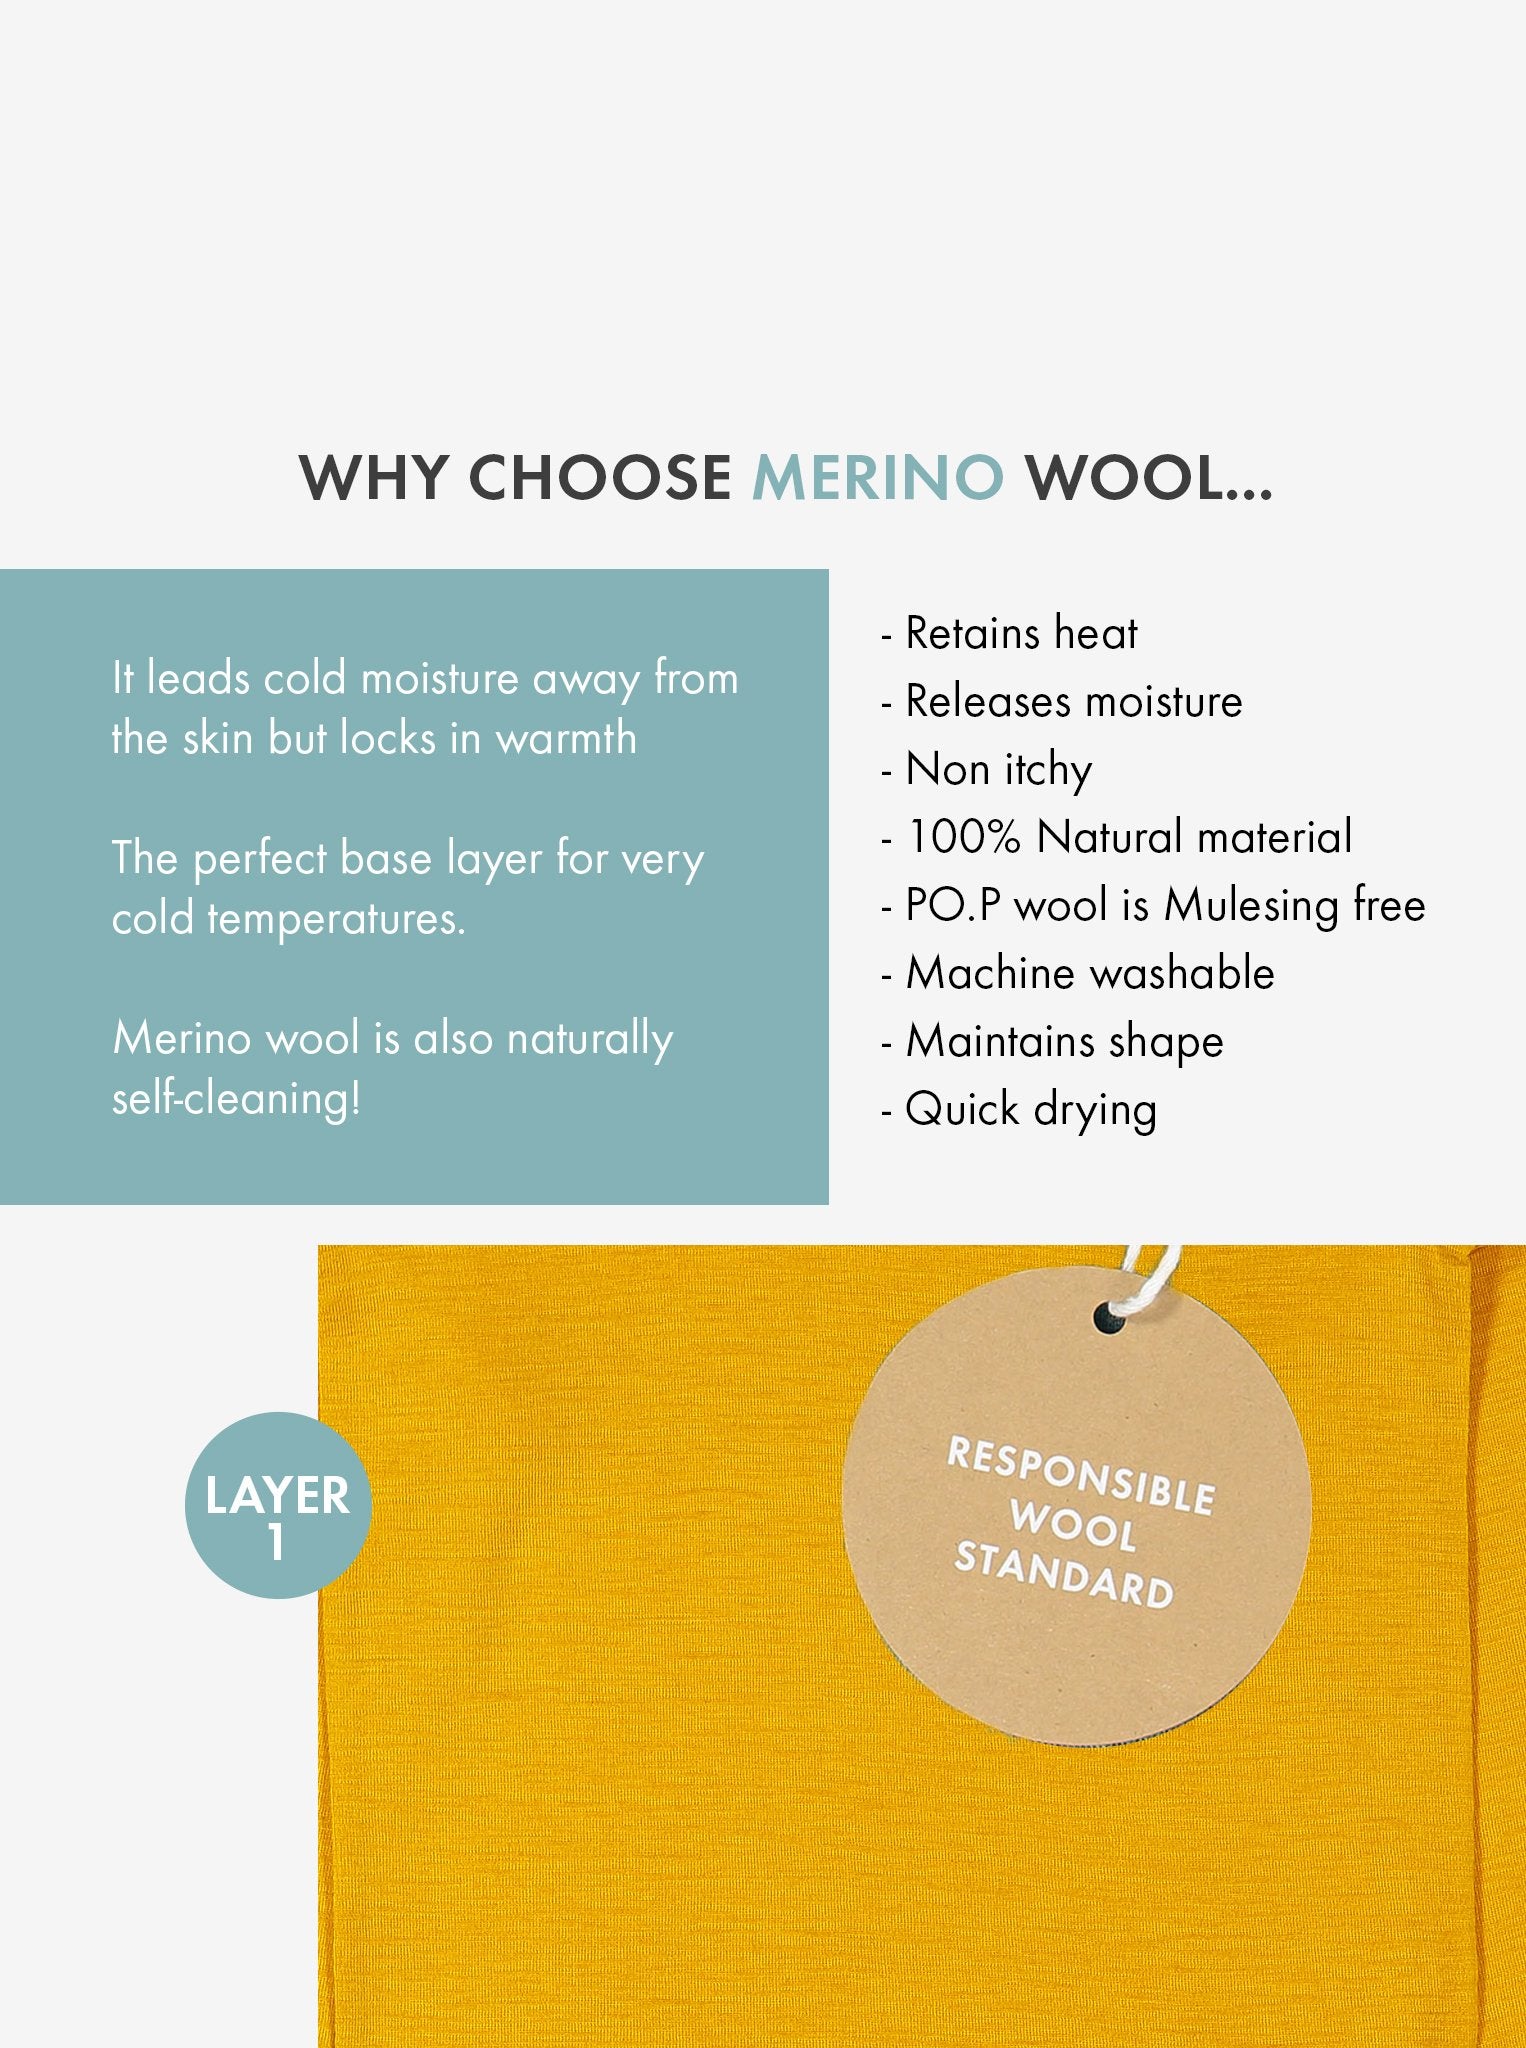 Why chose merino wool? 